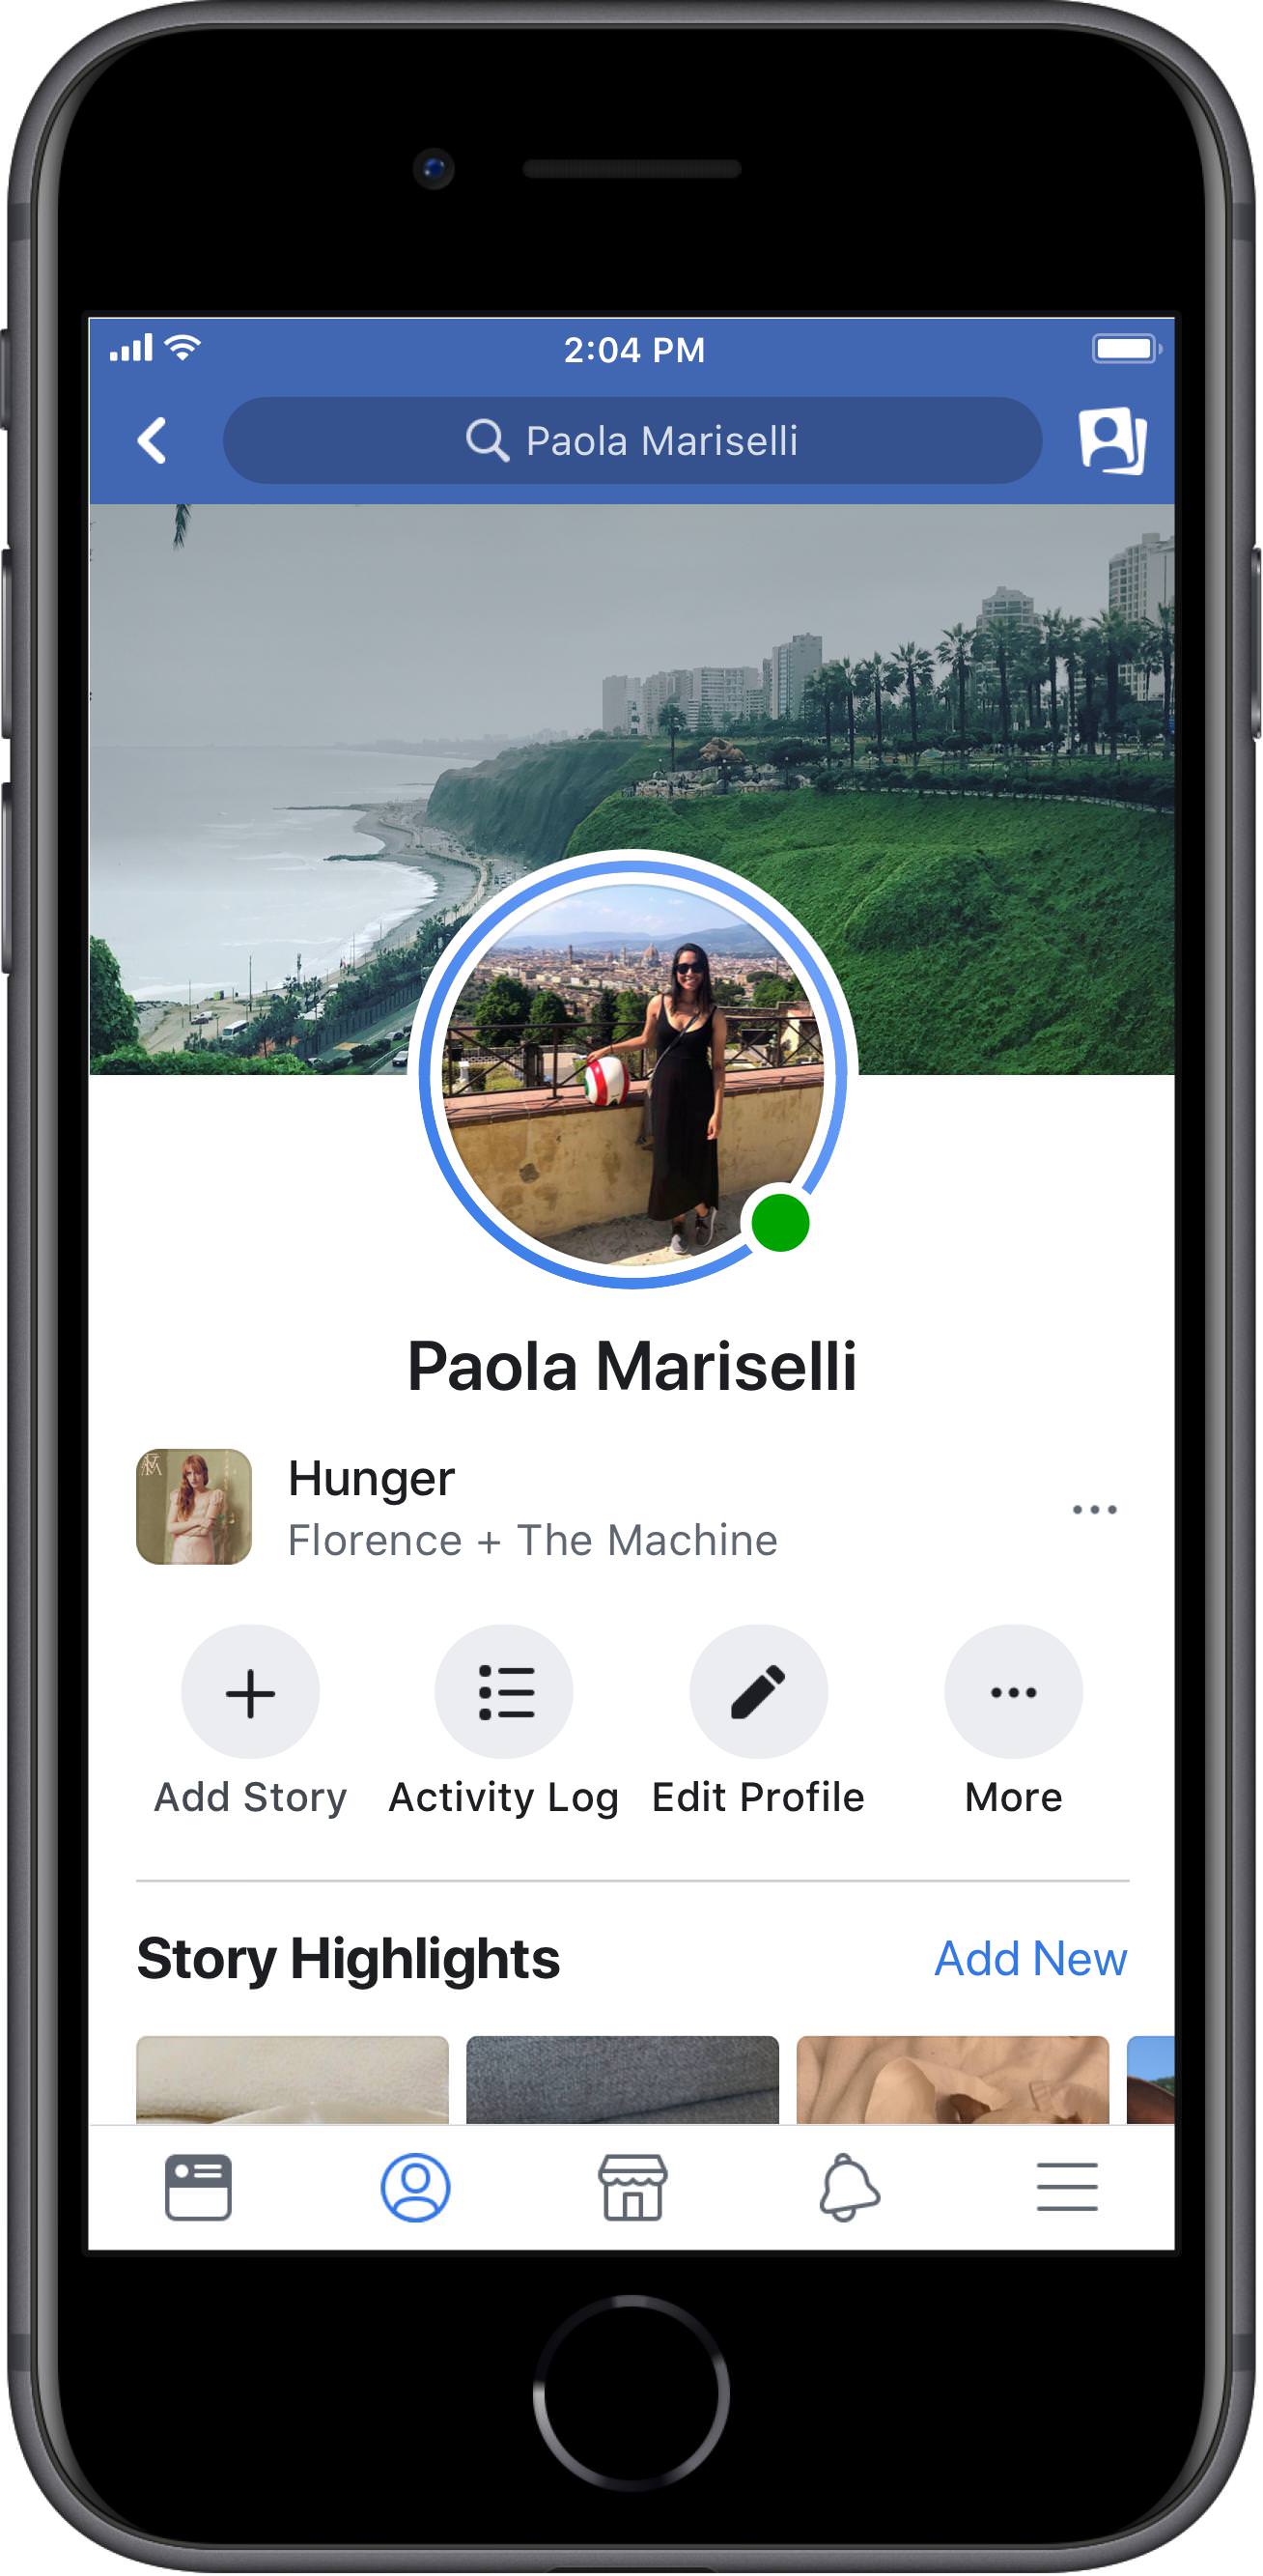 ฟีเจอร์ใหม่ Facebook เพิ่มเพลงบนรูปโปรไฟล์เป็น Stories พร้อมสติกเกอร์เพลงใน  Stories ด้วย | Blognone